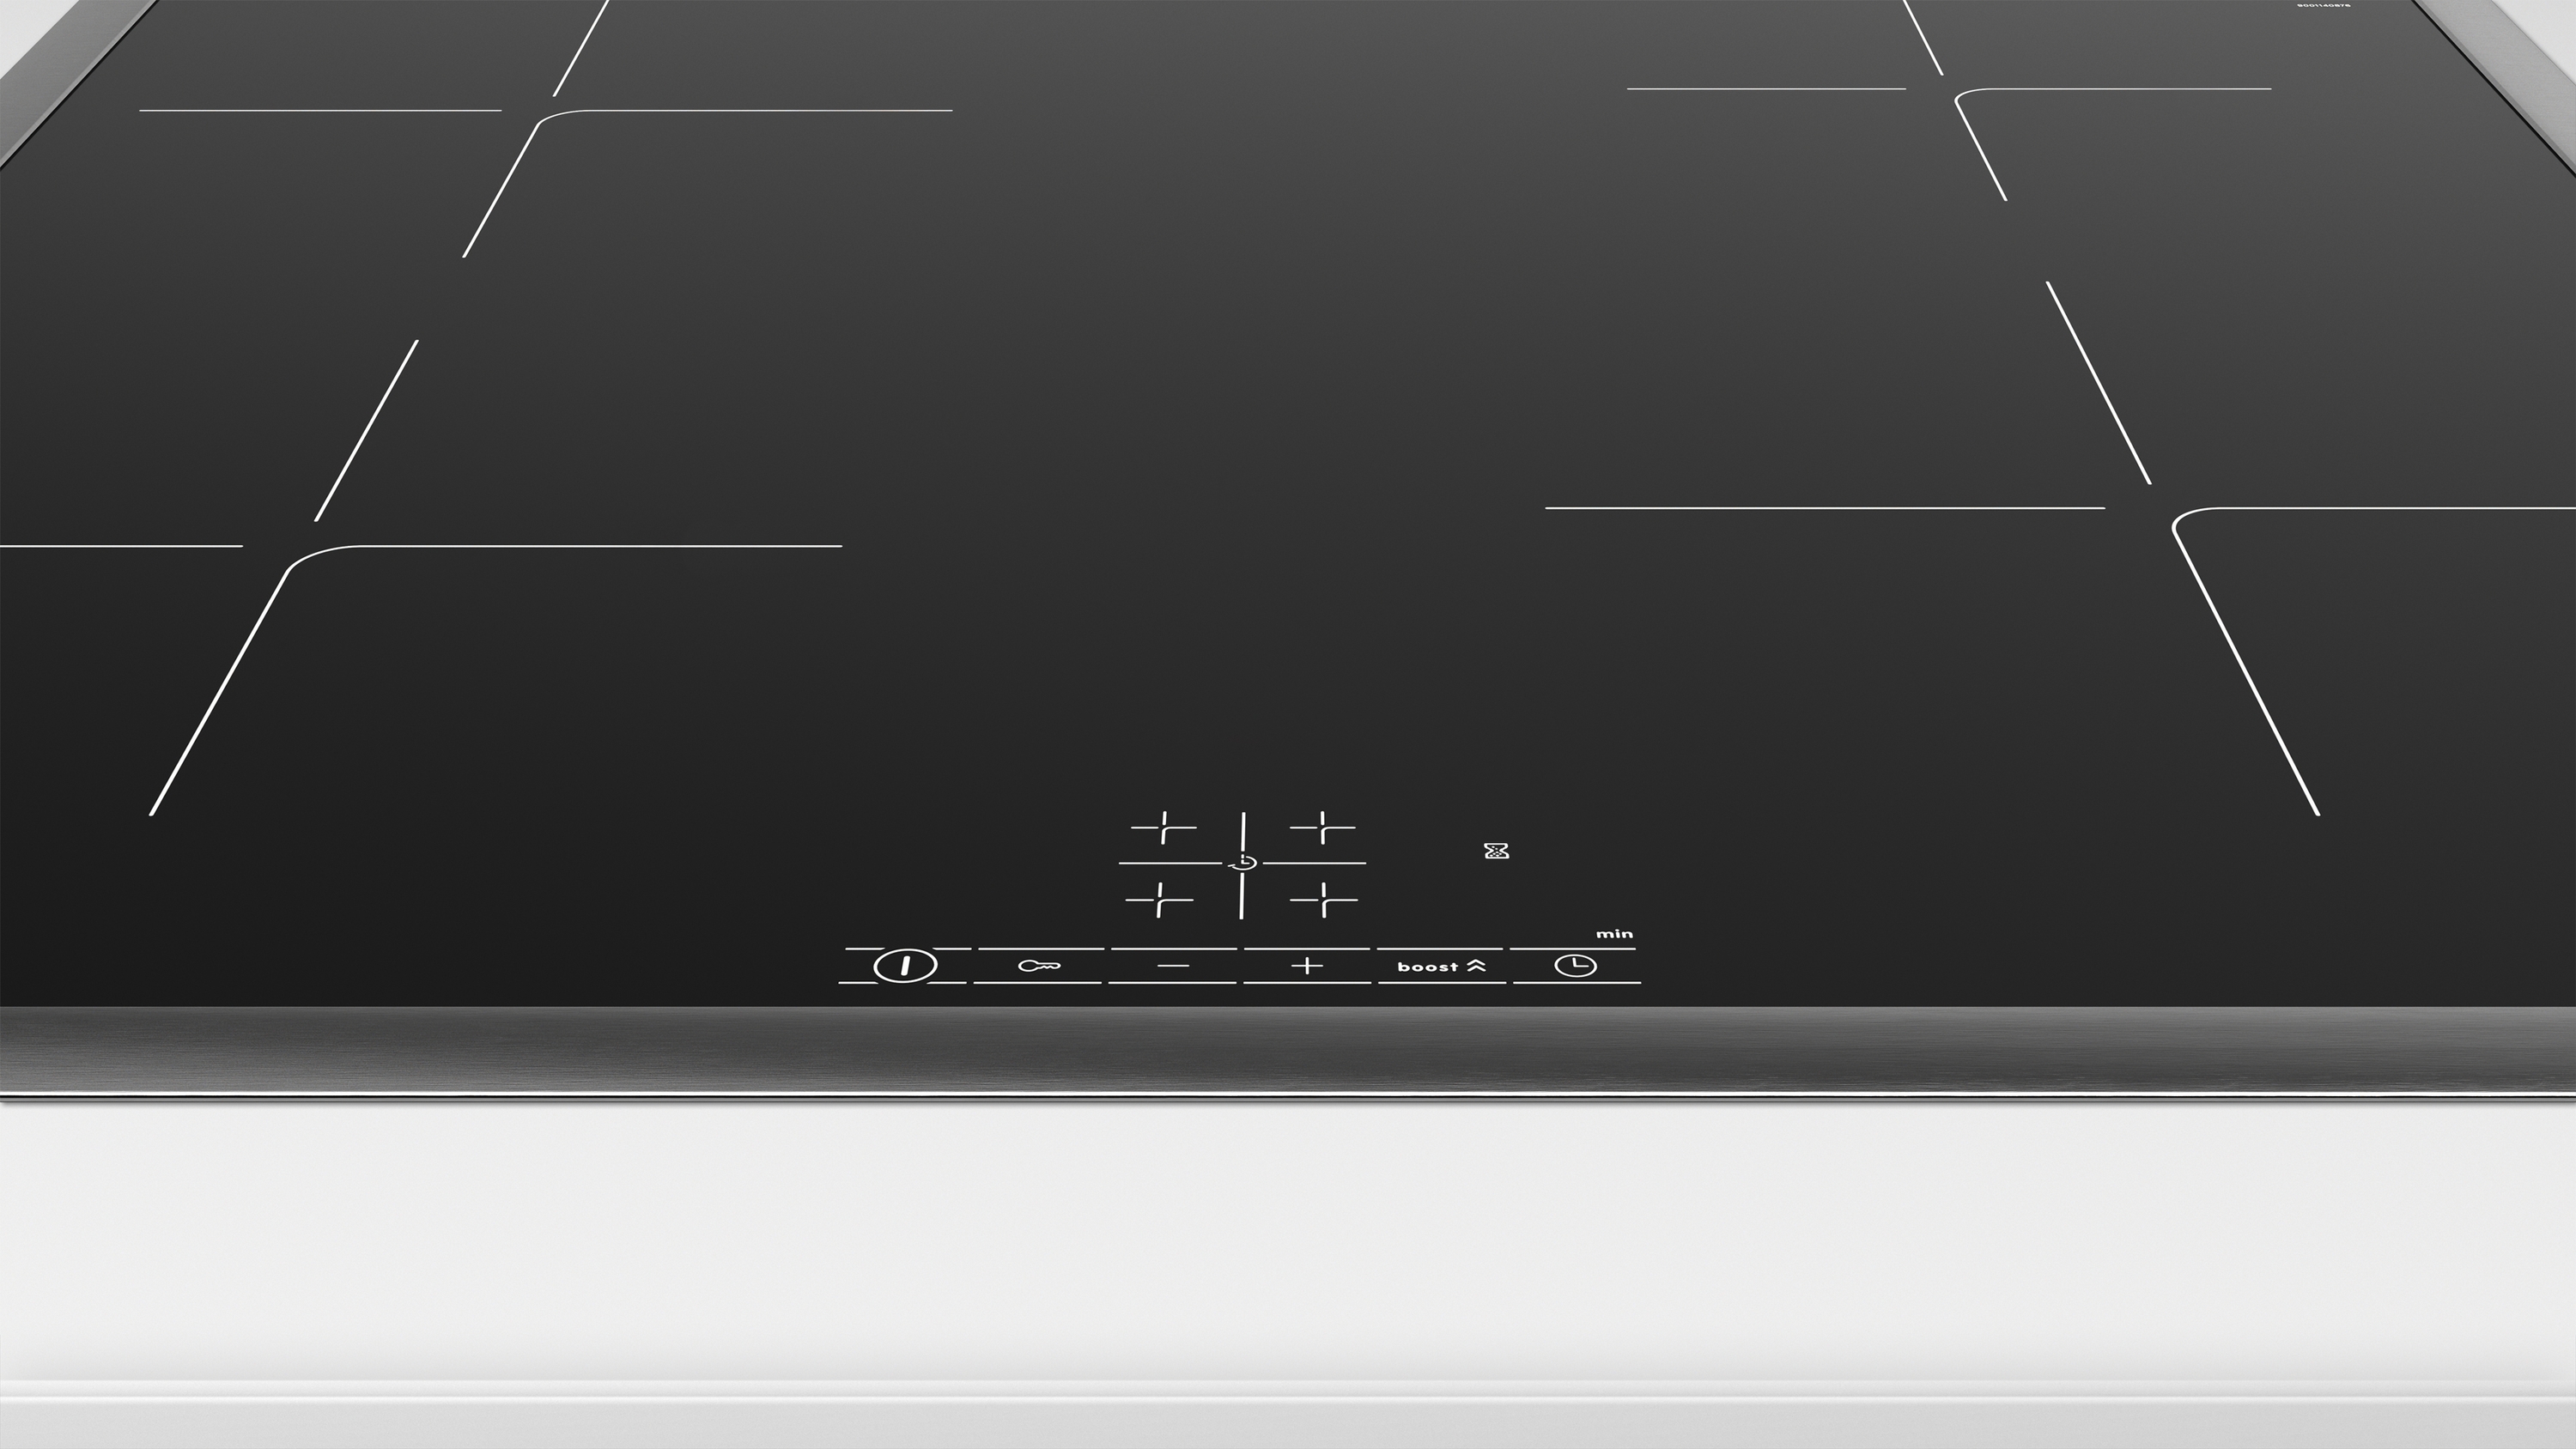 Serija 4, Indukciona ploča za kuvanje, 60 cm, Crna, ugradnja sa okvirom, PUE64KBB5E